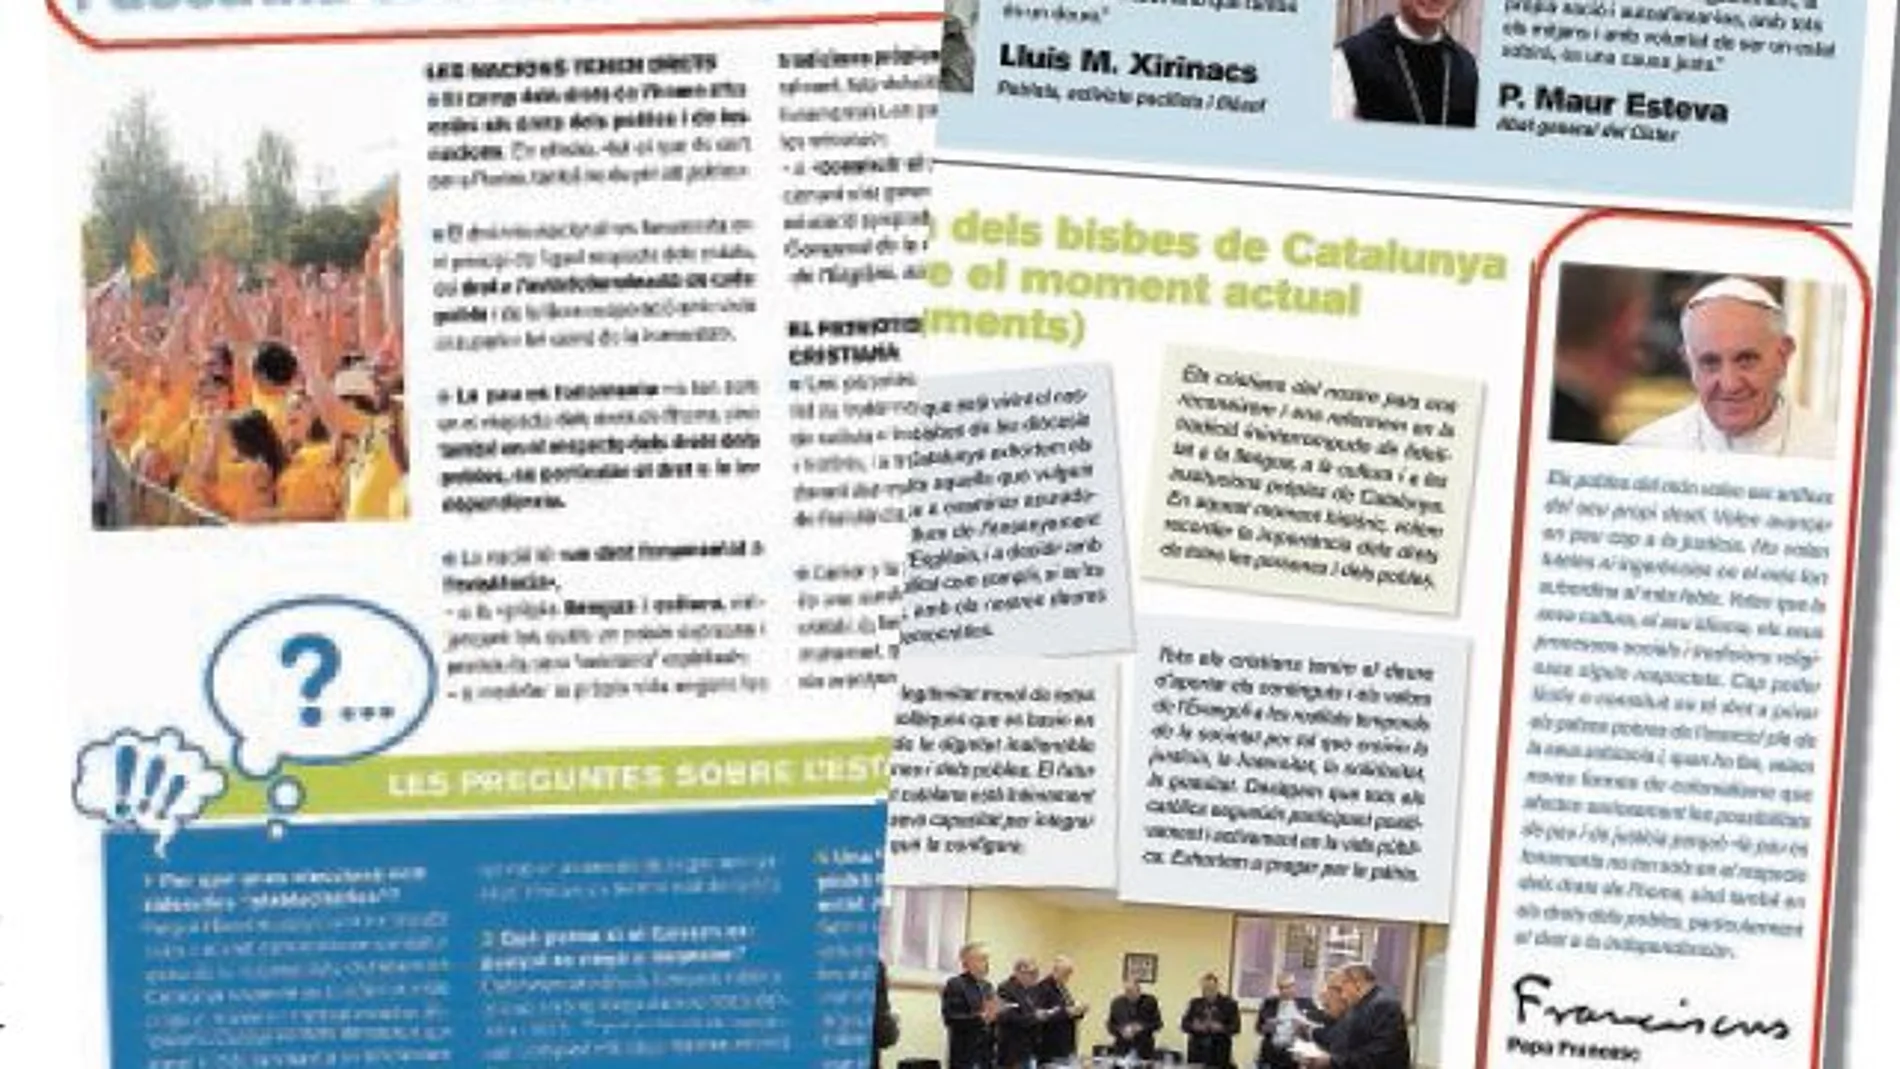 El panfleto, con el artículo sobre doctrina social de la Iglesia y la independencia y el extracto del discurso del Papa en Bolivia